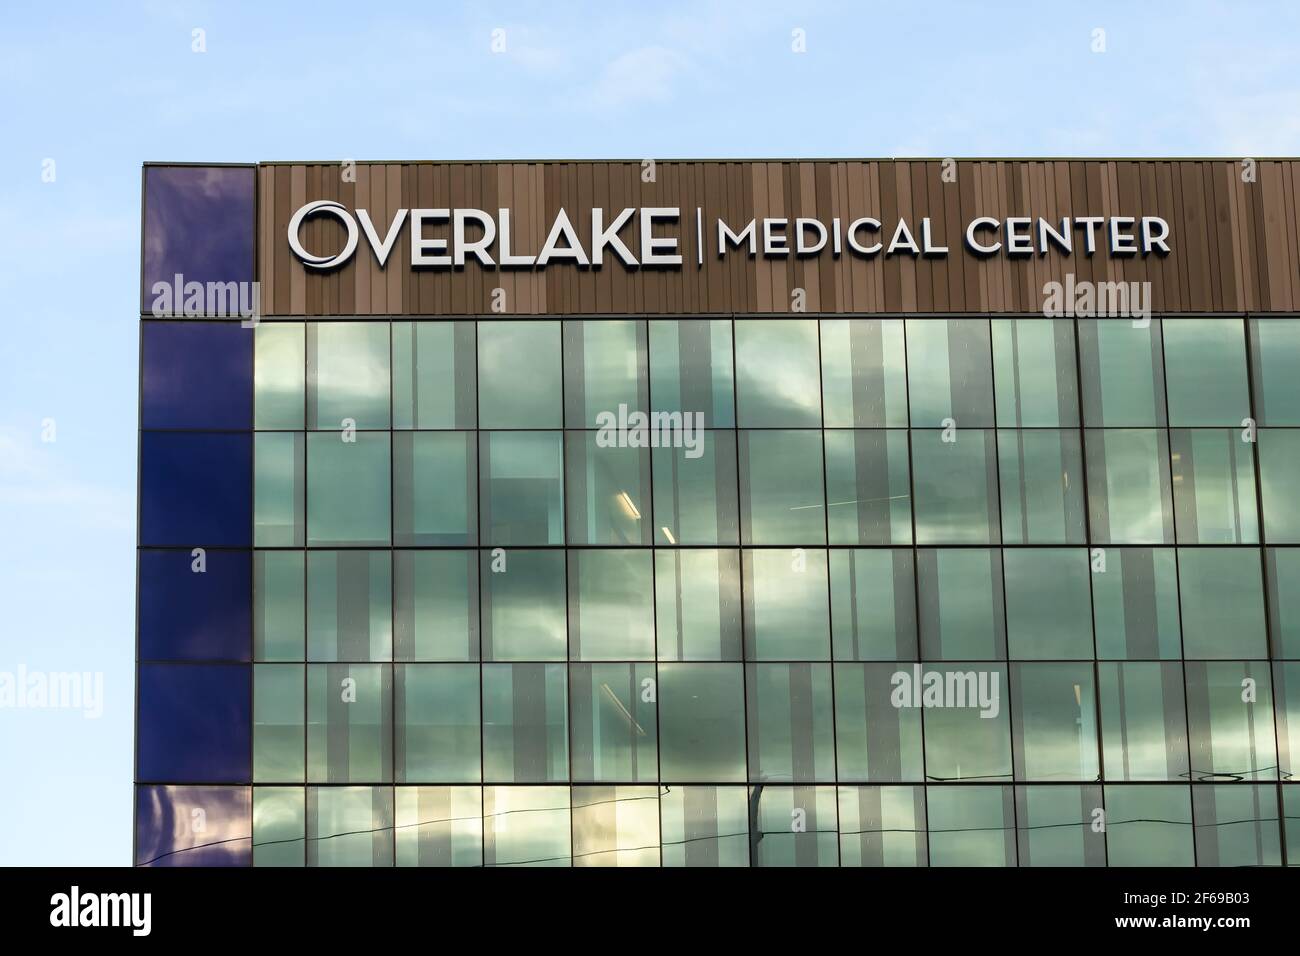 La nouvelle tour du centre médical Overlake à Bellevue, dans l'État de Washington, États-Unis, avec le nom de l'installation au sommet de la tour Banque D'Images